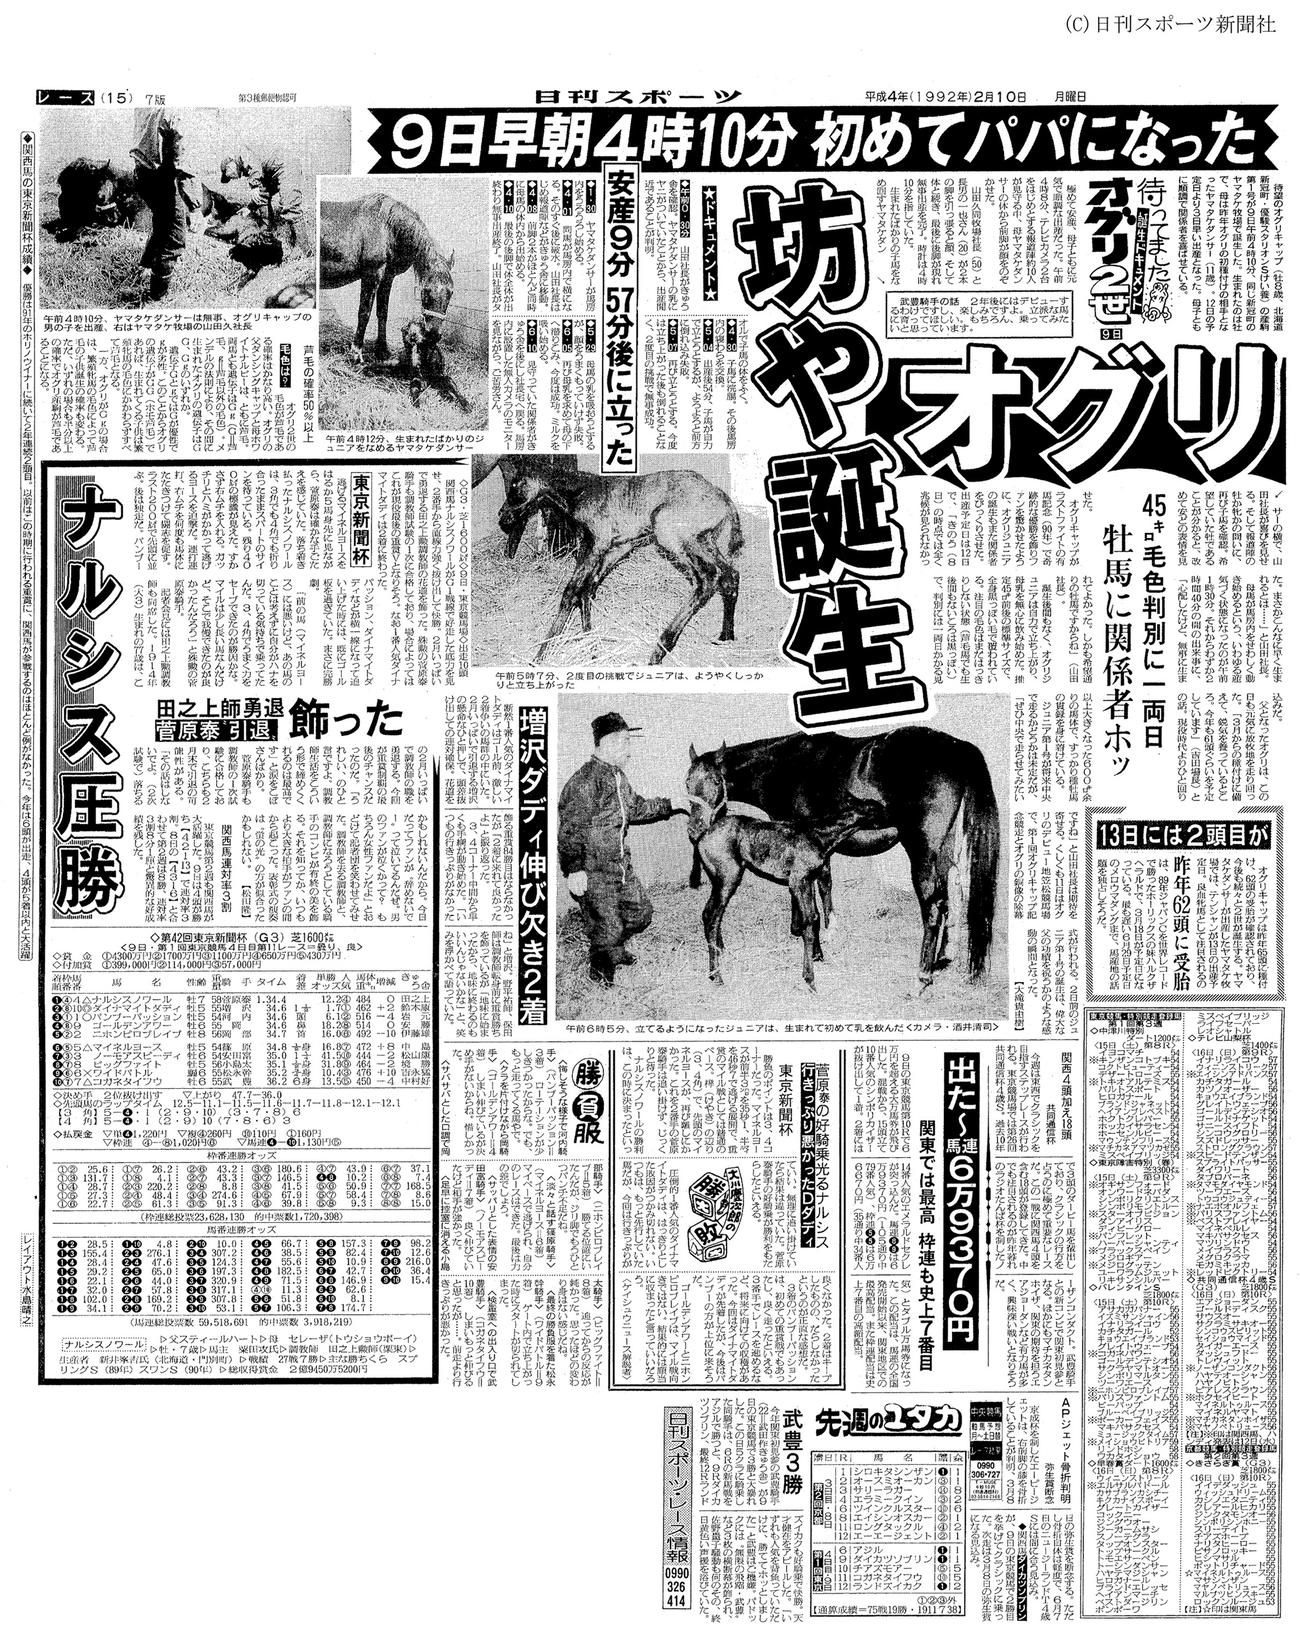 オグリキャップ最初の産駒オグリワンの誕生を報じる1992年2月10日紙面